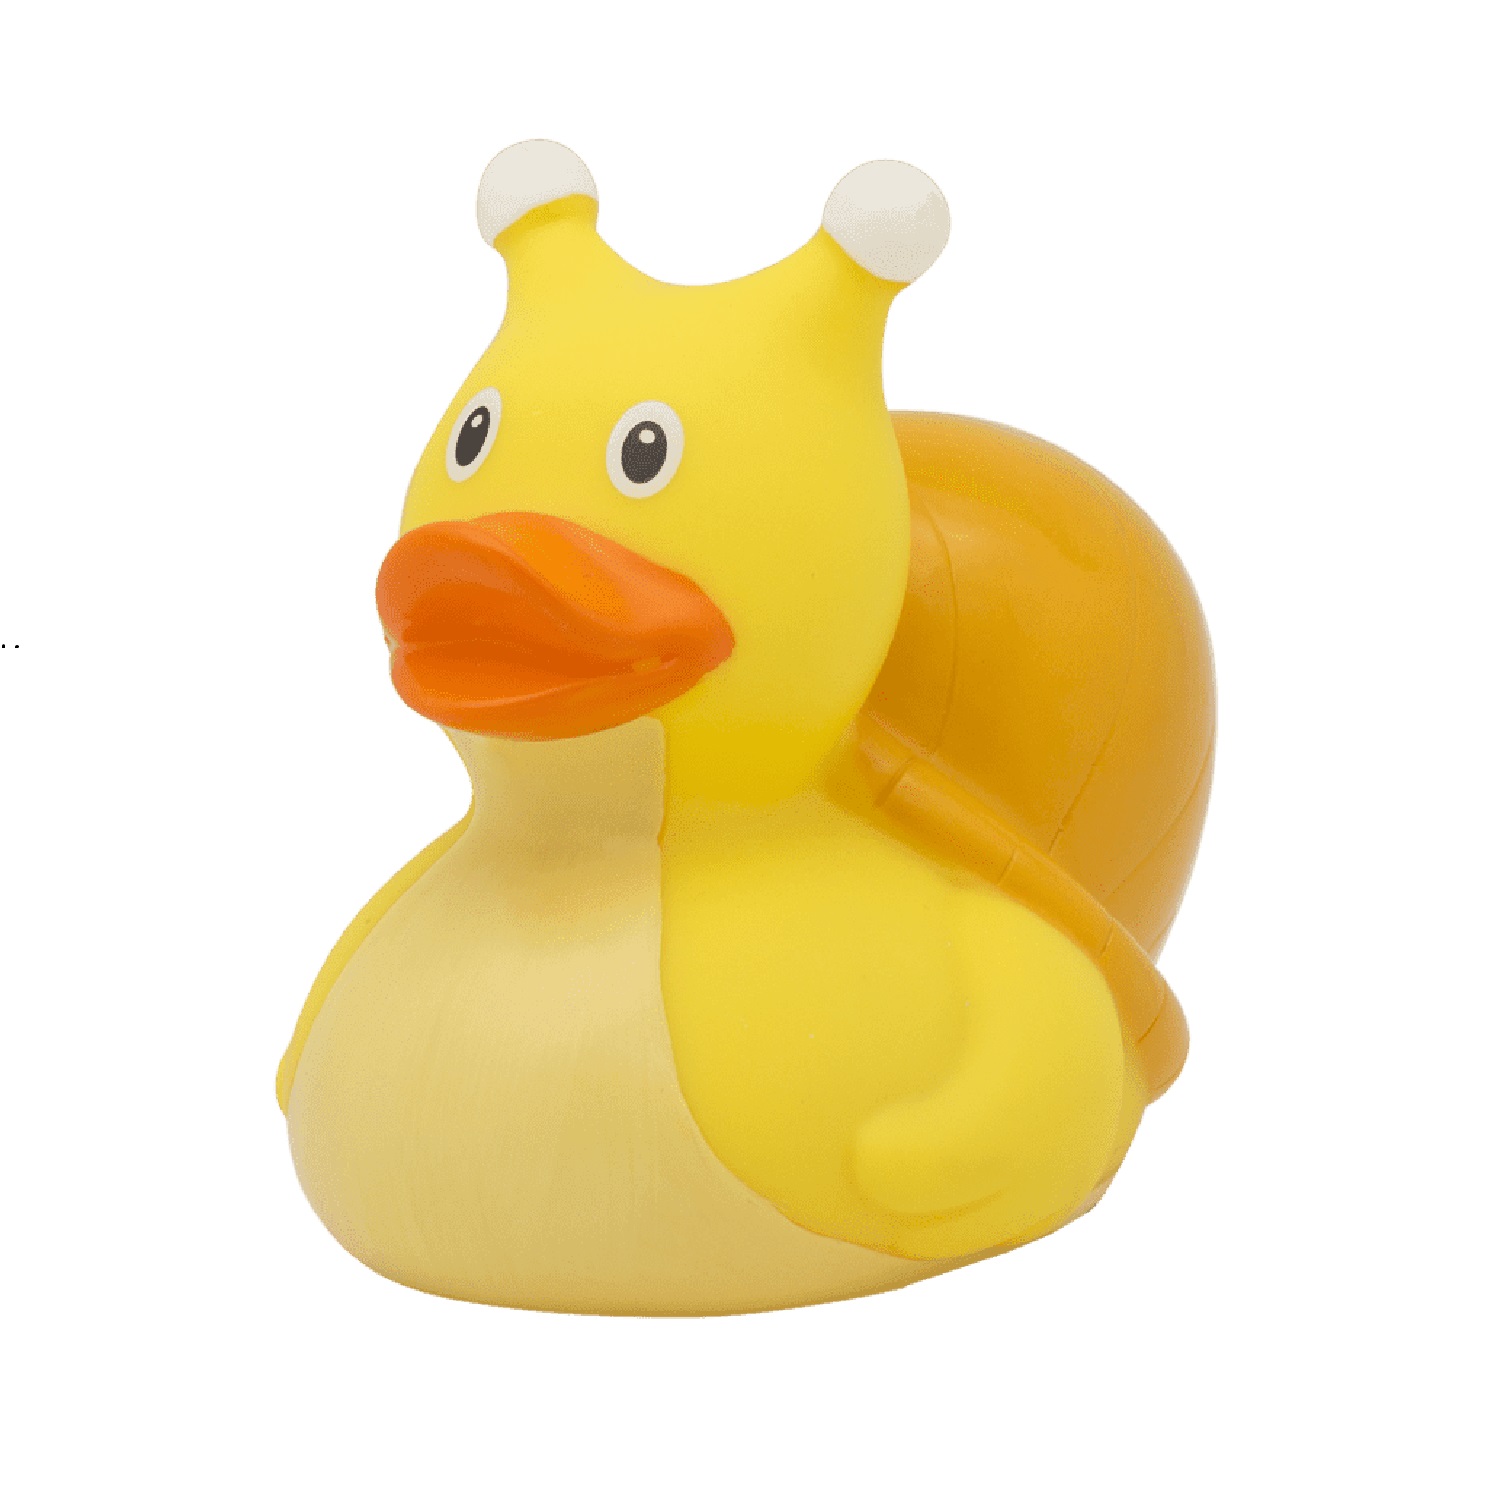 Игрушка Funny ducks для ванной Улитка уточка 1219 - фото 2